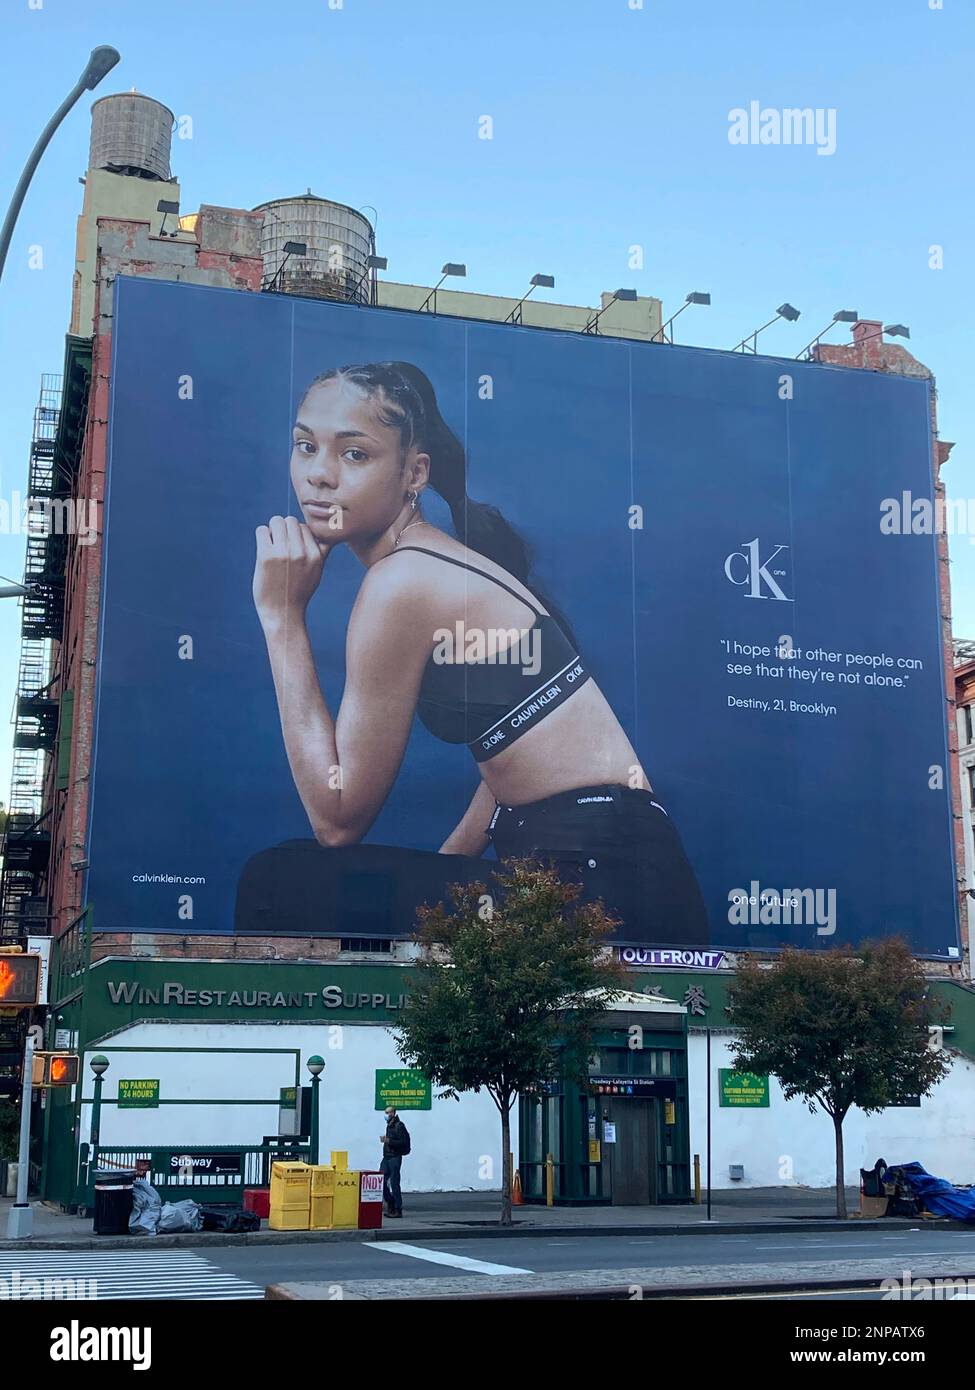 Photo by: STRF/STAR MAX/IPx 2020 11/2/20 A Calvin Klein billboard